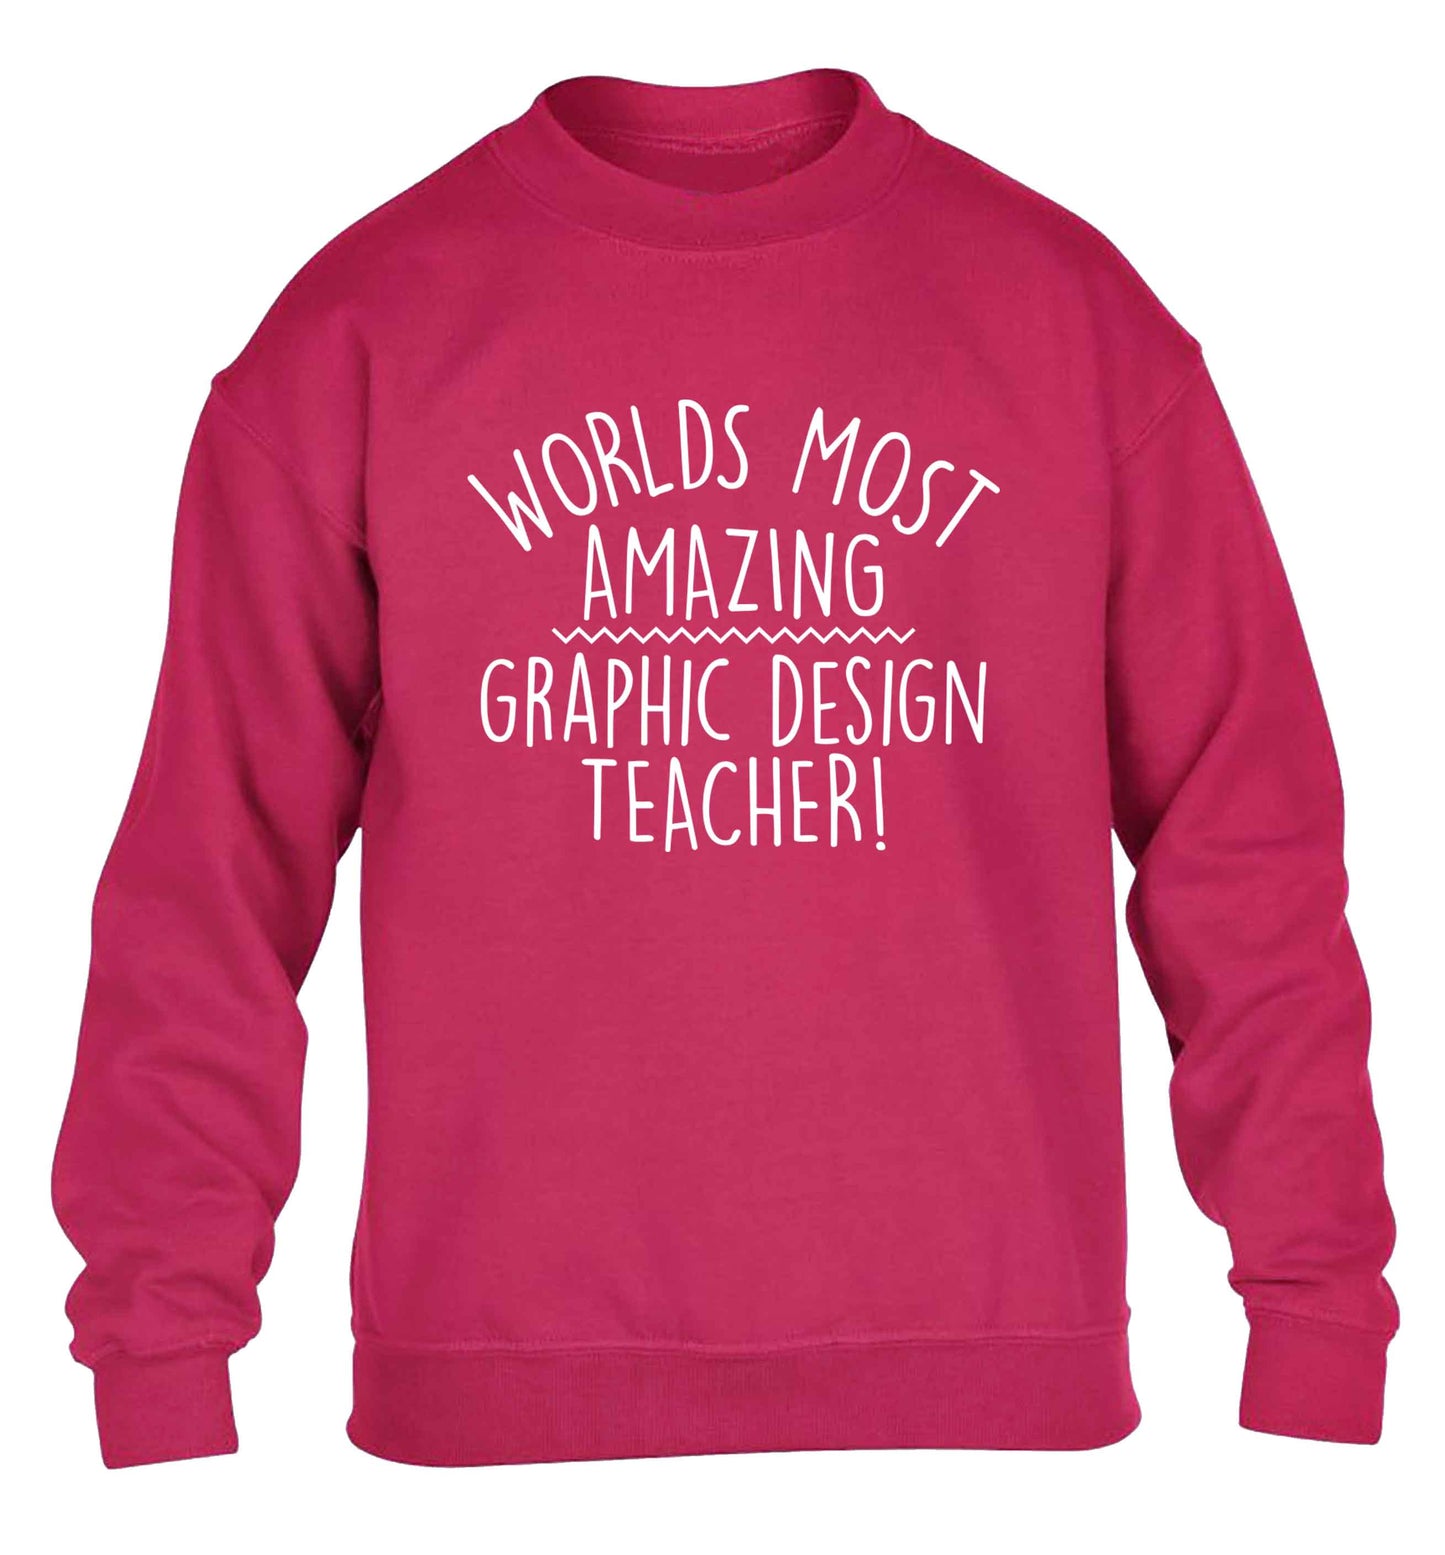 Worlds most amazing graphic design teacher children's pink sweater 12-13 Years